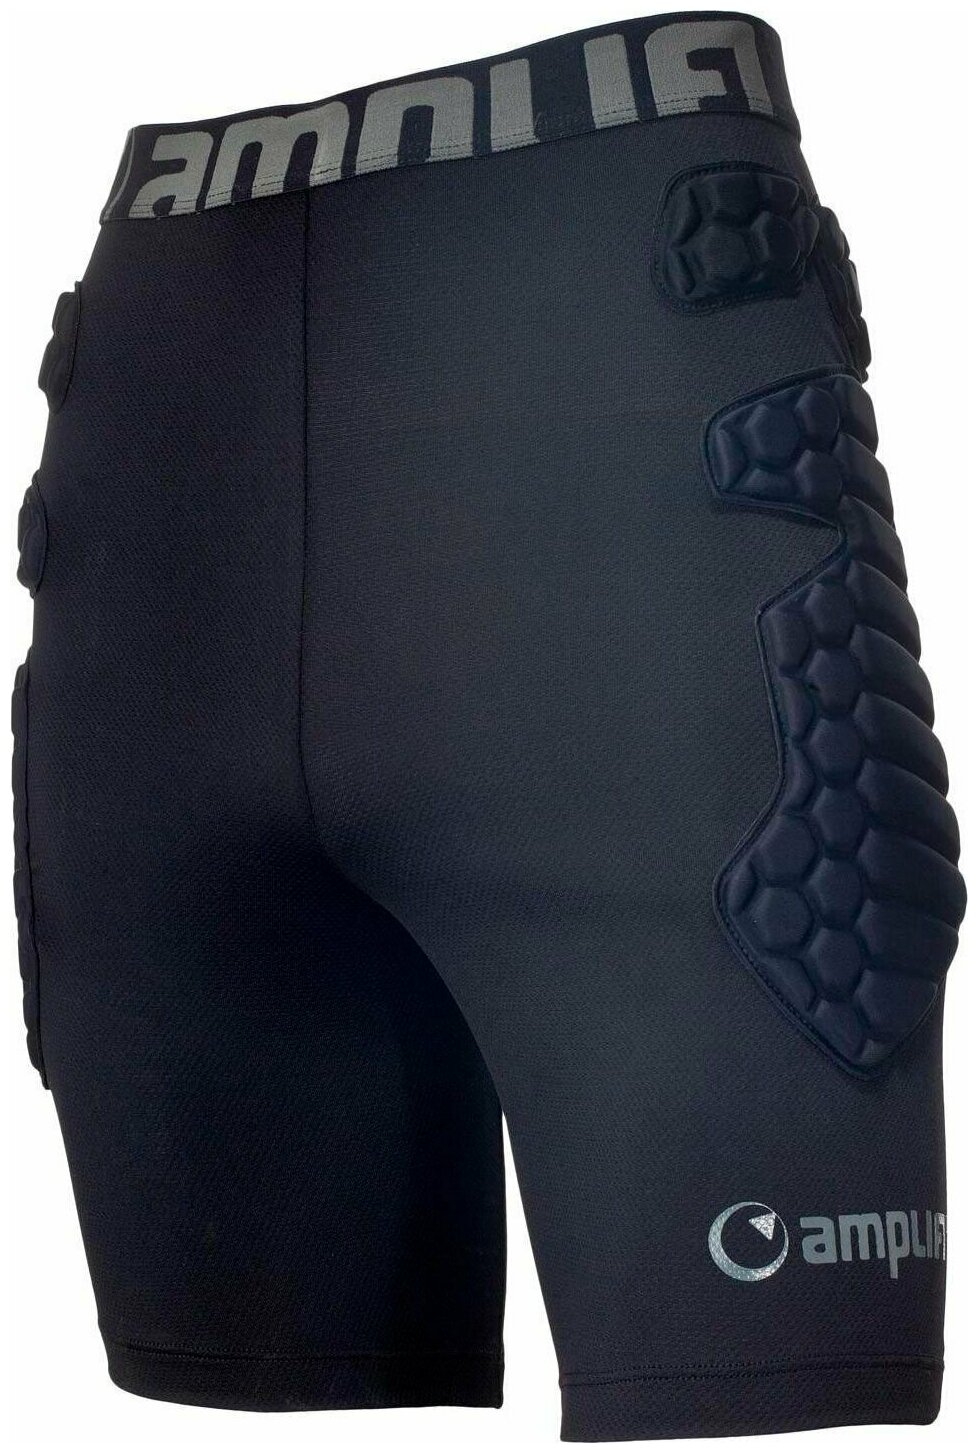 Защитные шорты AMPLIFI SALVO PANT (23/24) Black